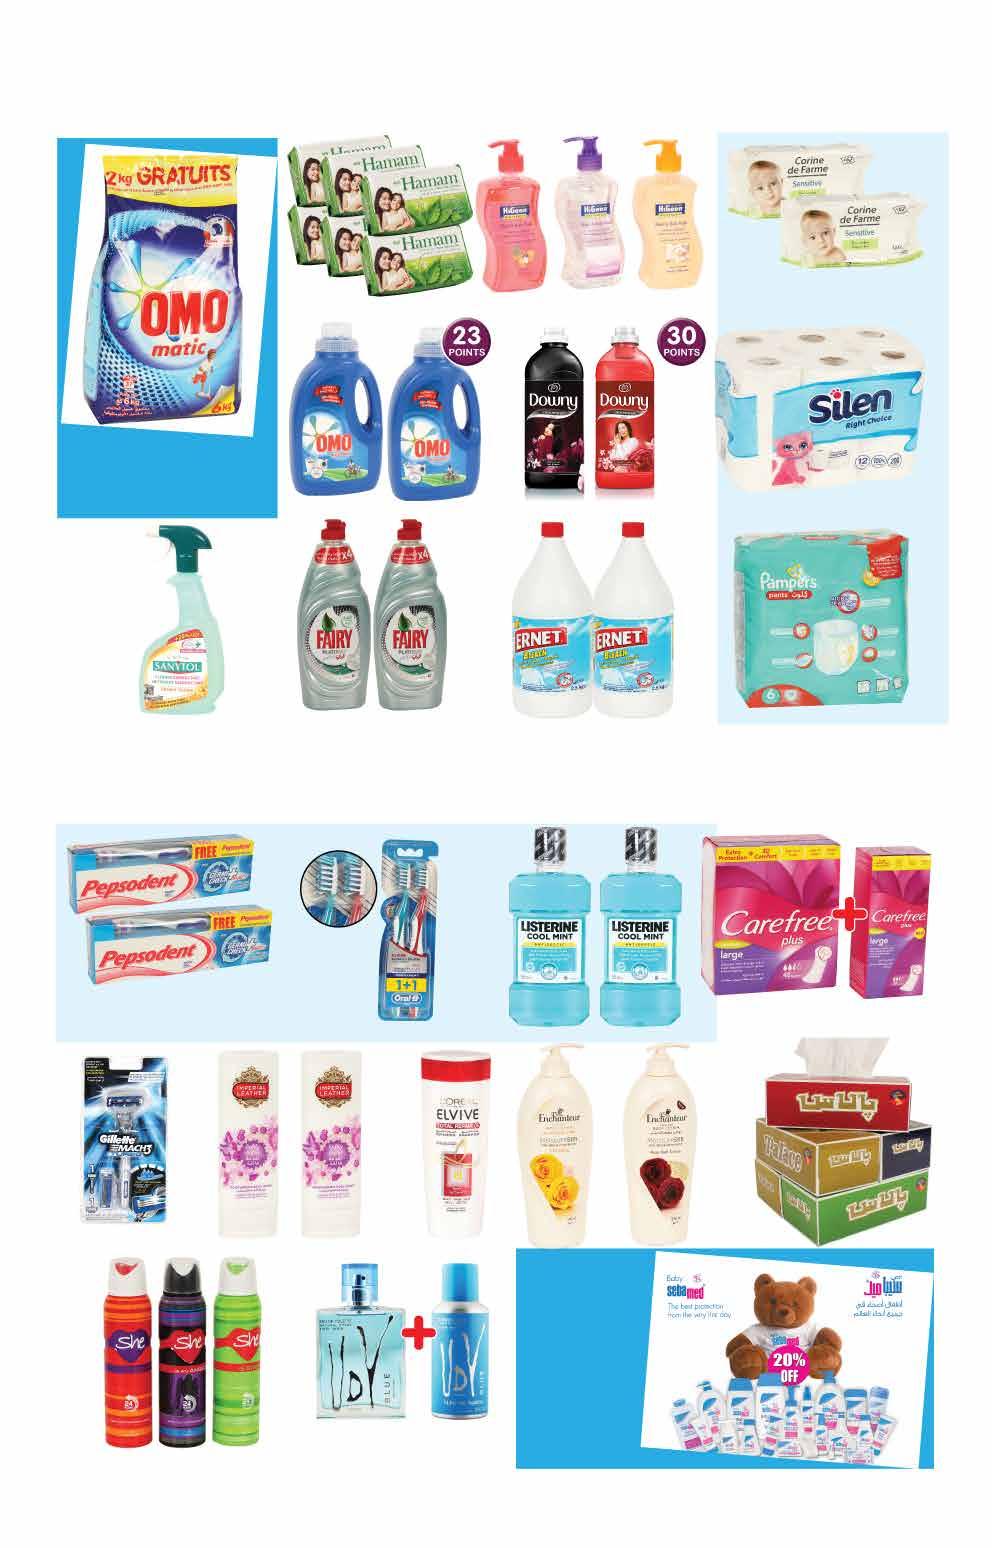 المنتجات في هذه الصفحة متوفرة أيضا في كارفور دار السلام مول Items in this page also available at Carrefour Dar Al Salam 5 5.00 مسحوق أومو ٦ كغ Omo detergent assorted kg.